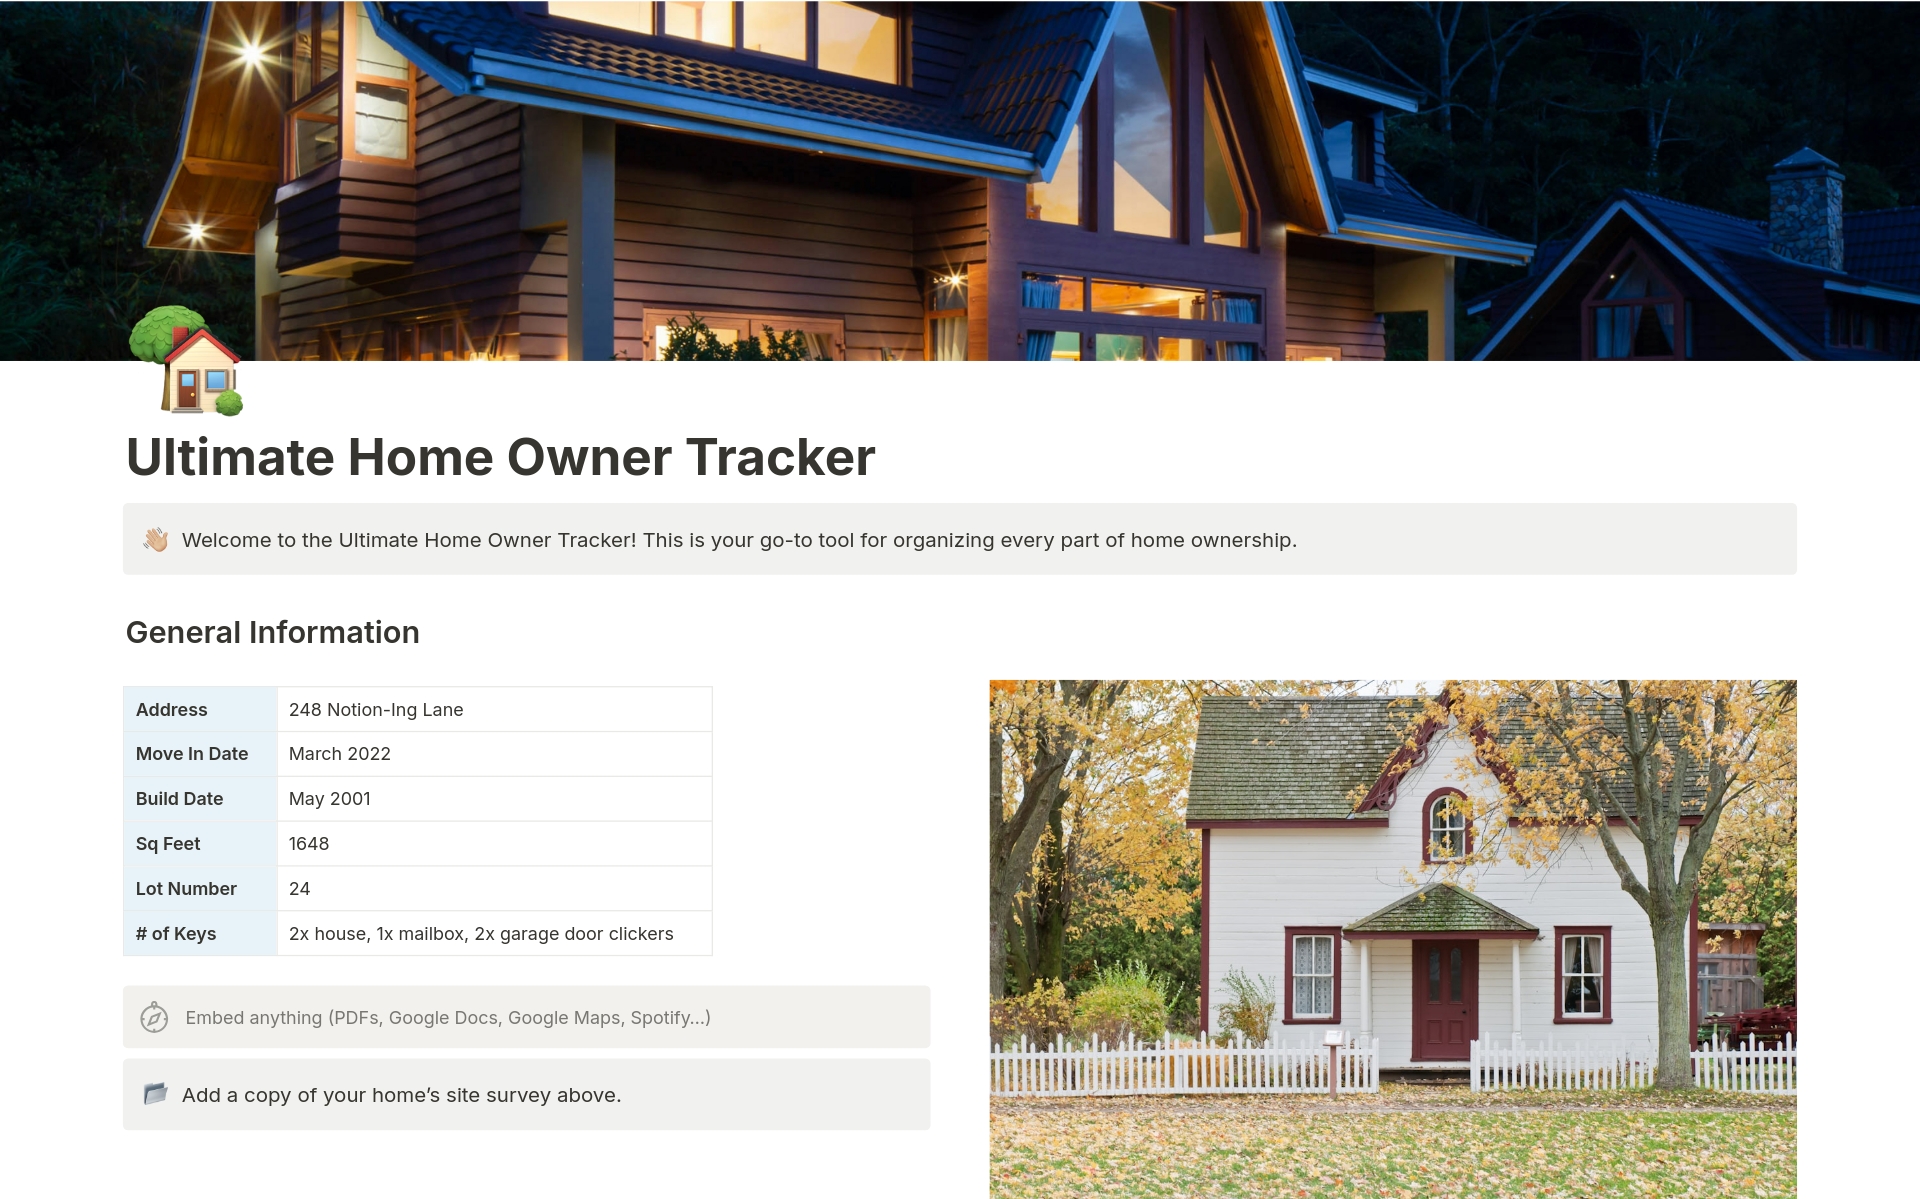 Uma prévia do modelo para Ultimate Home Owner Tracker